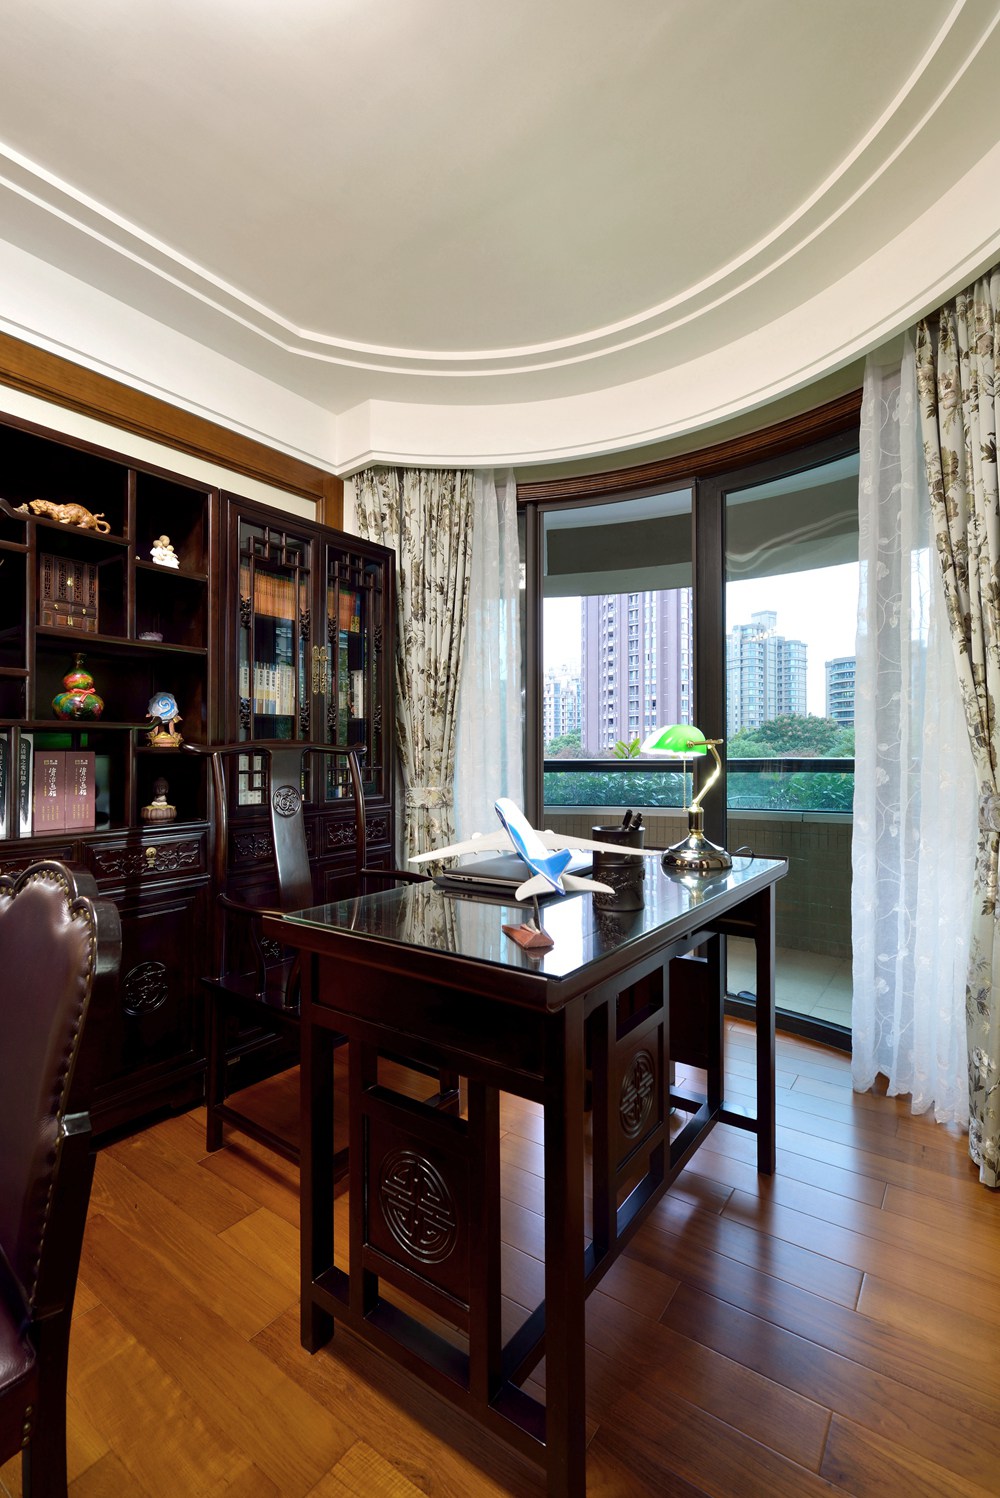 浦东新区上海绿城140平方中式风格3室2厅2卫书房装修效果图